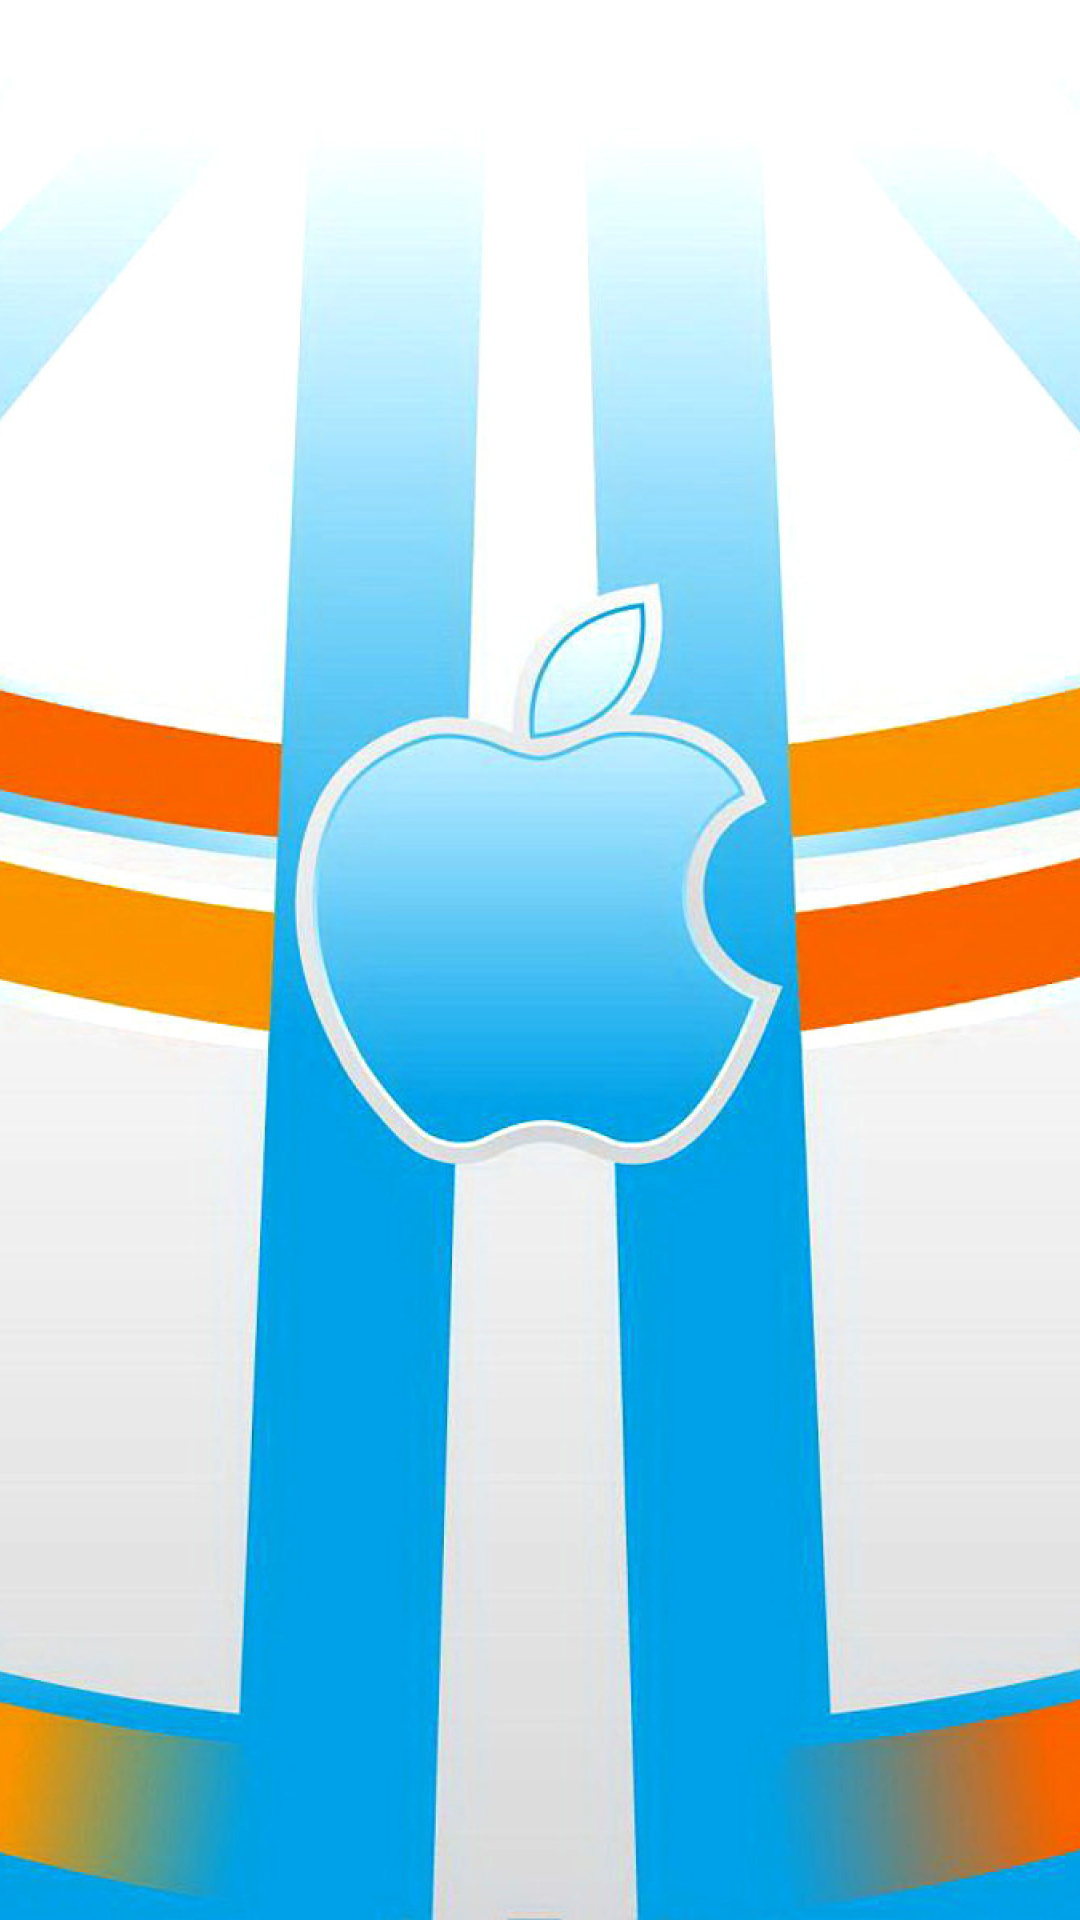 Apple Emblem wallpaper 1080x1920